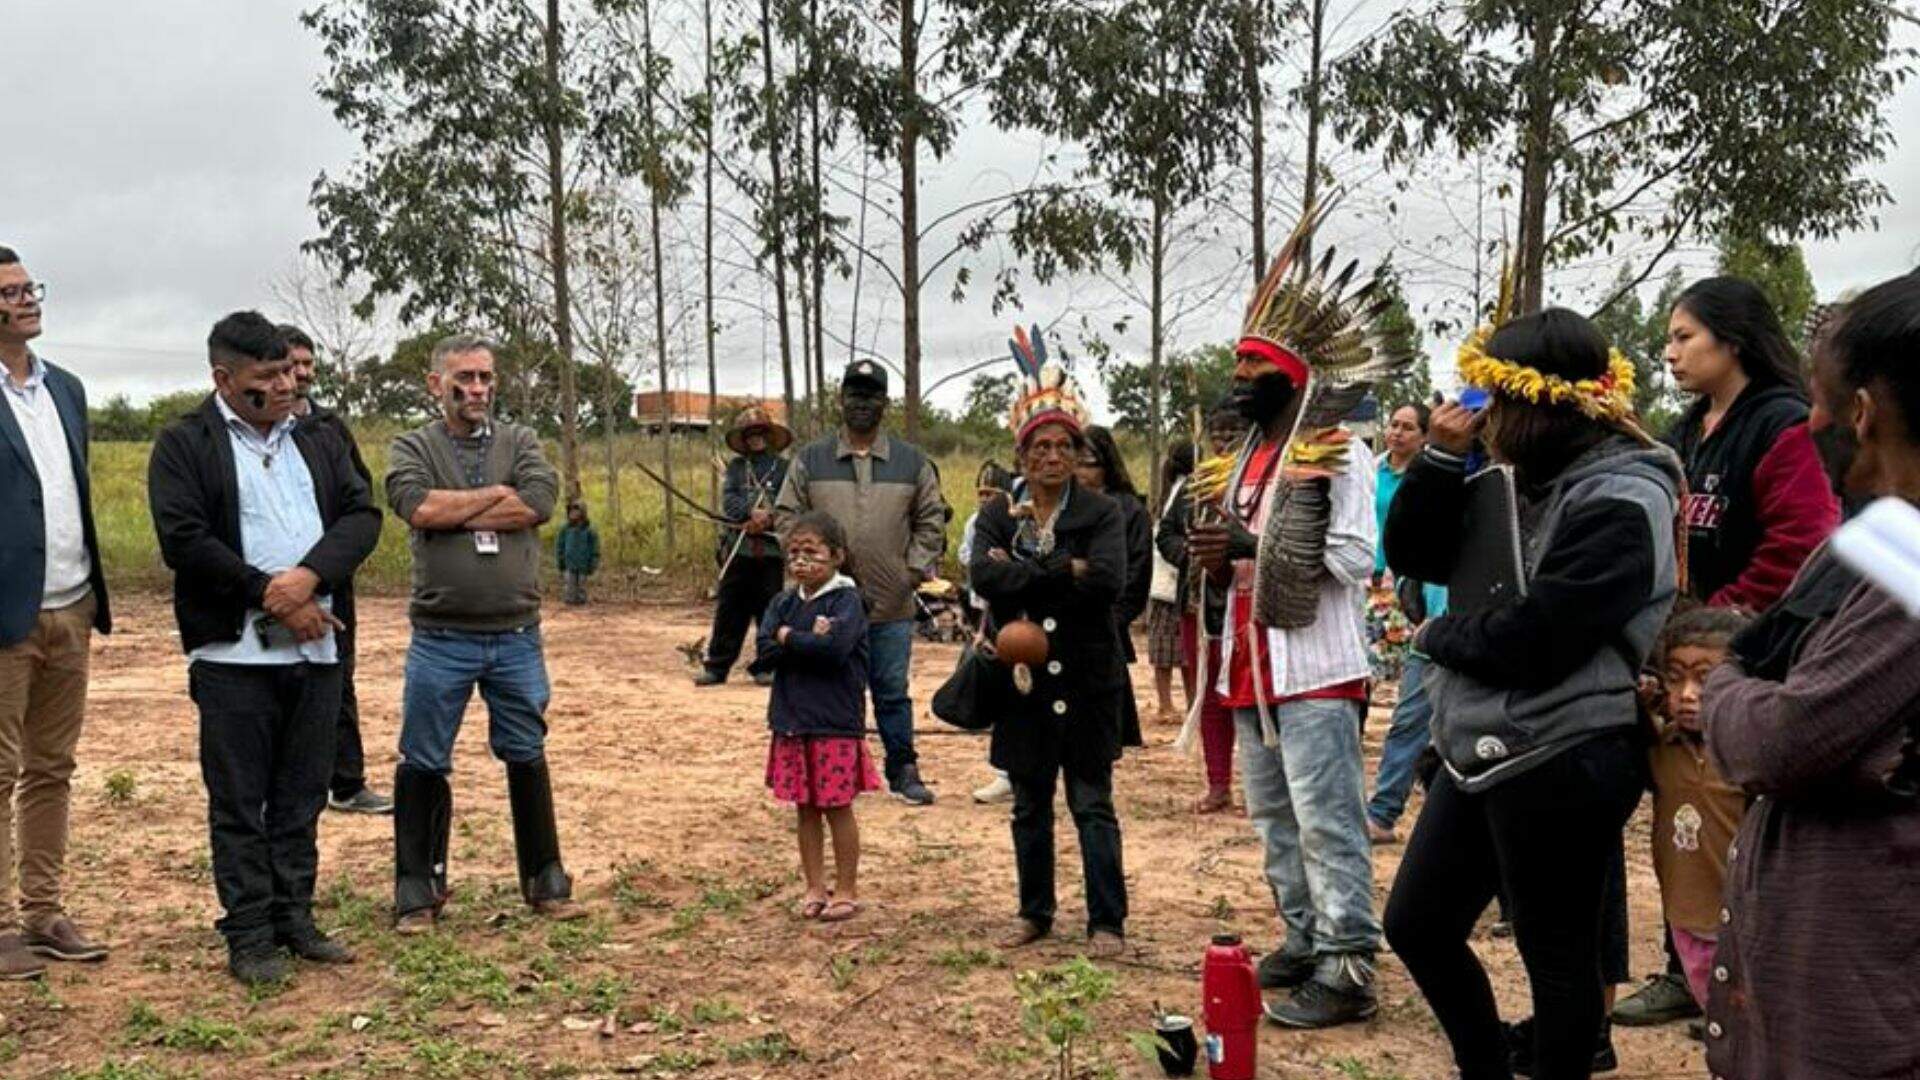 Ministro prorroga presença da Força Nacional em área de disputa indígena em Naviraí